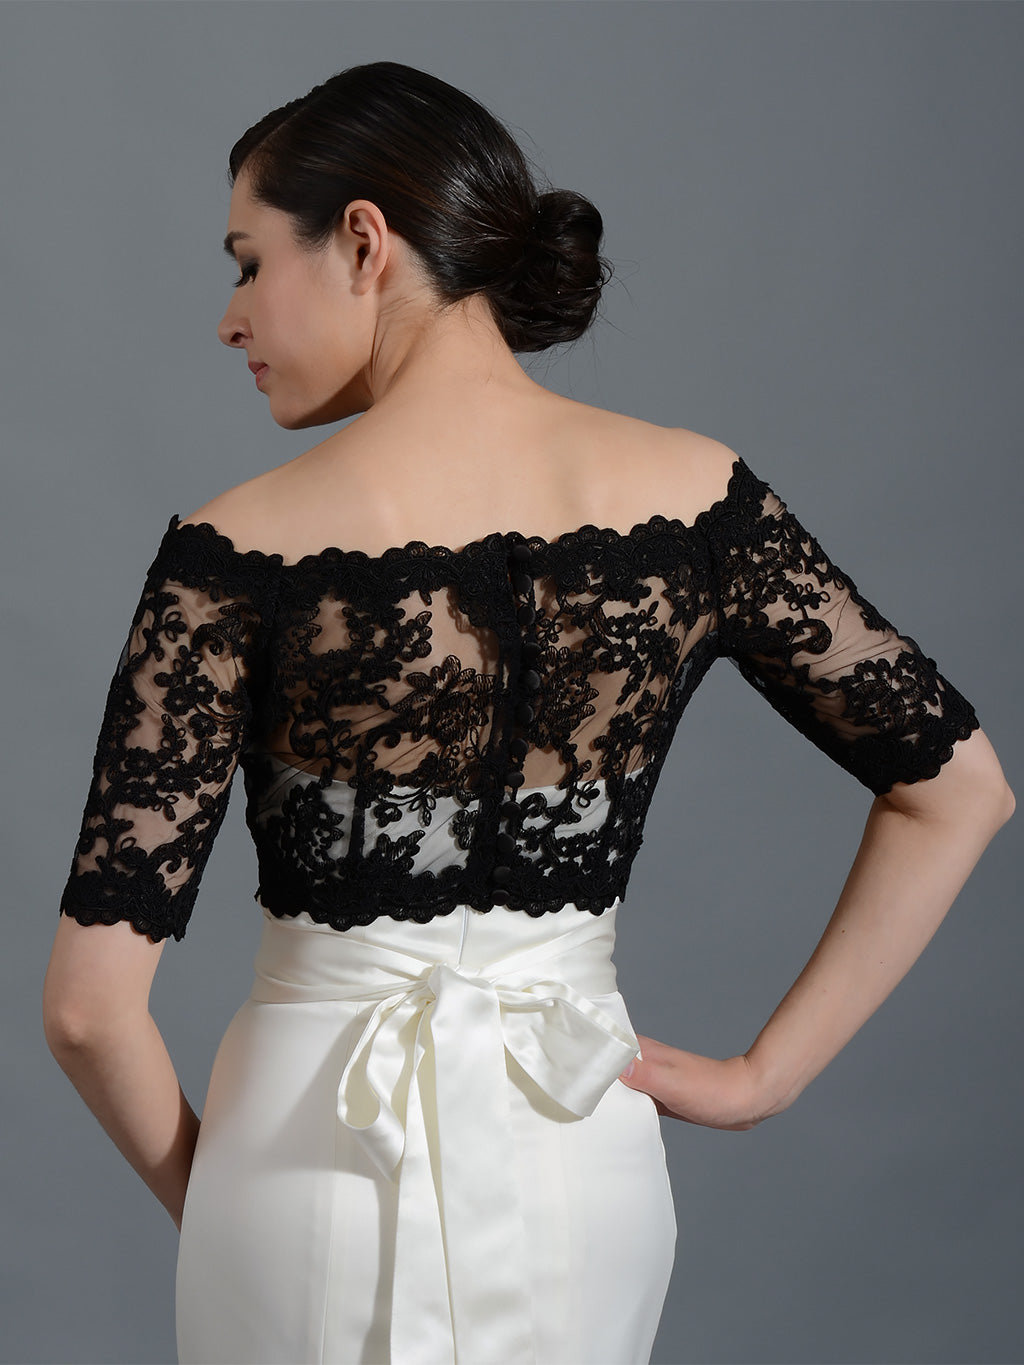 Black Off-Shoulder Alencon Lace Bridal Bolero Wedding jacket